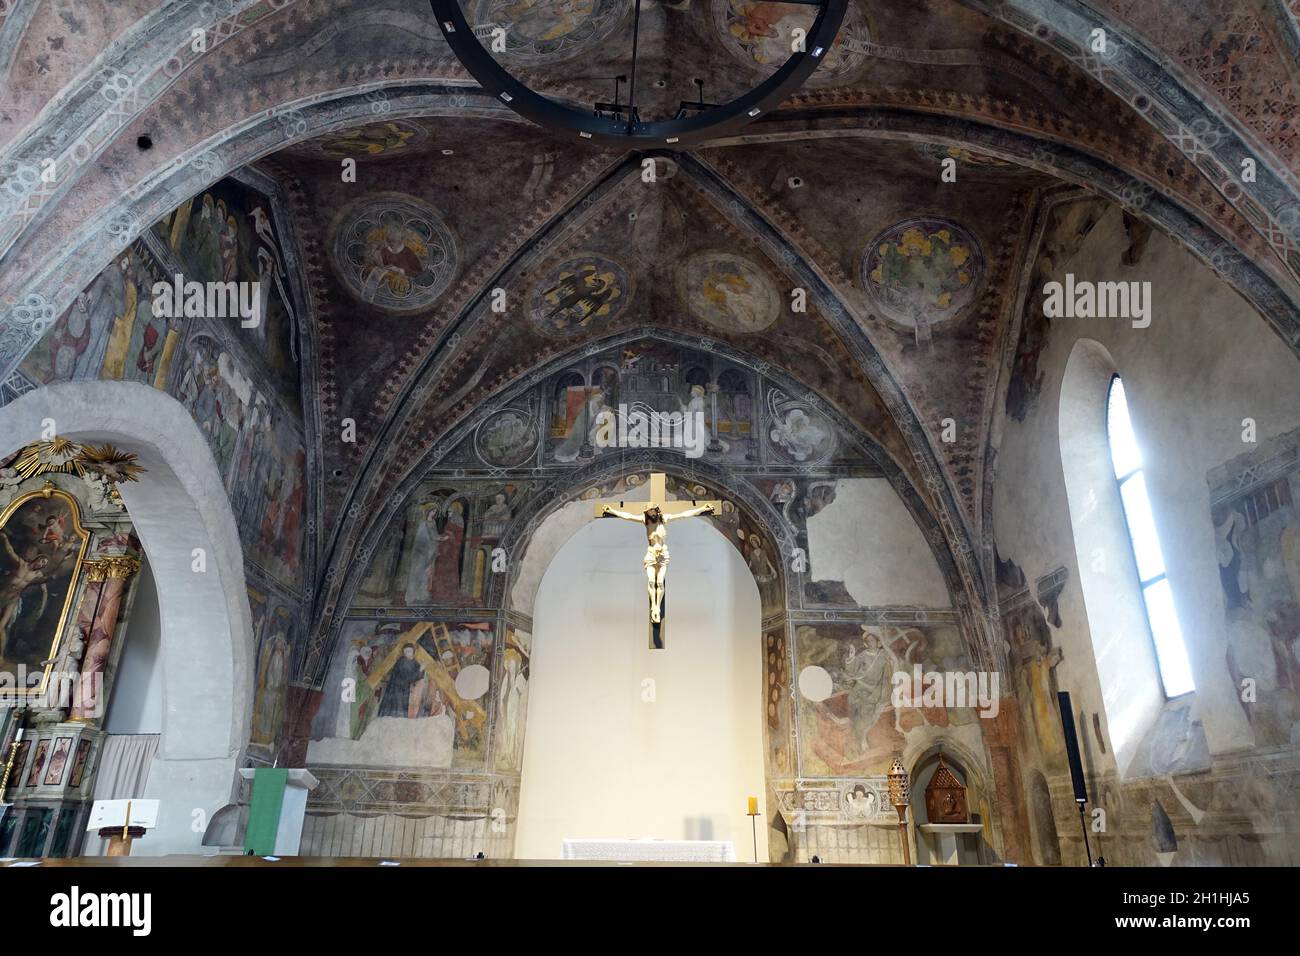 Kunstvolle Fresken in der Spitalkirche zum Heiligen Geist, Sterzing, Südtirol, Italie Banque D'Images